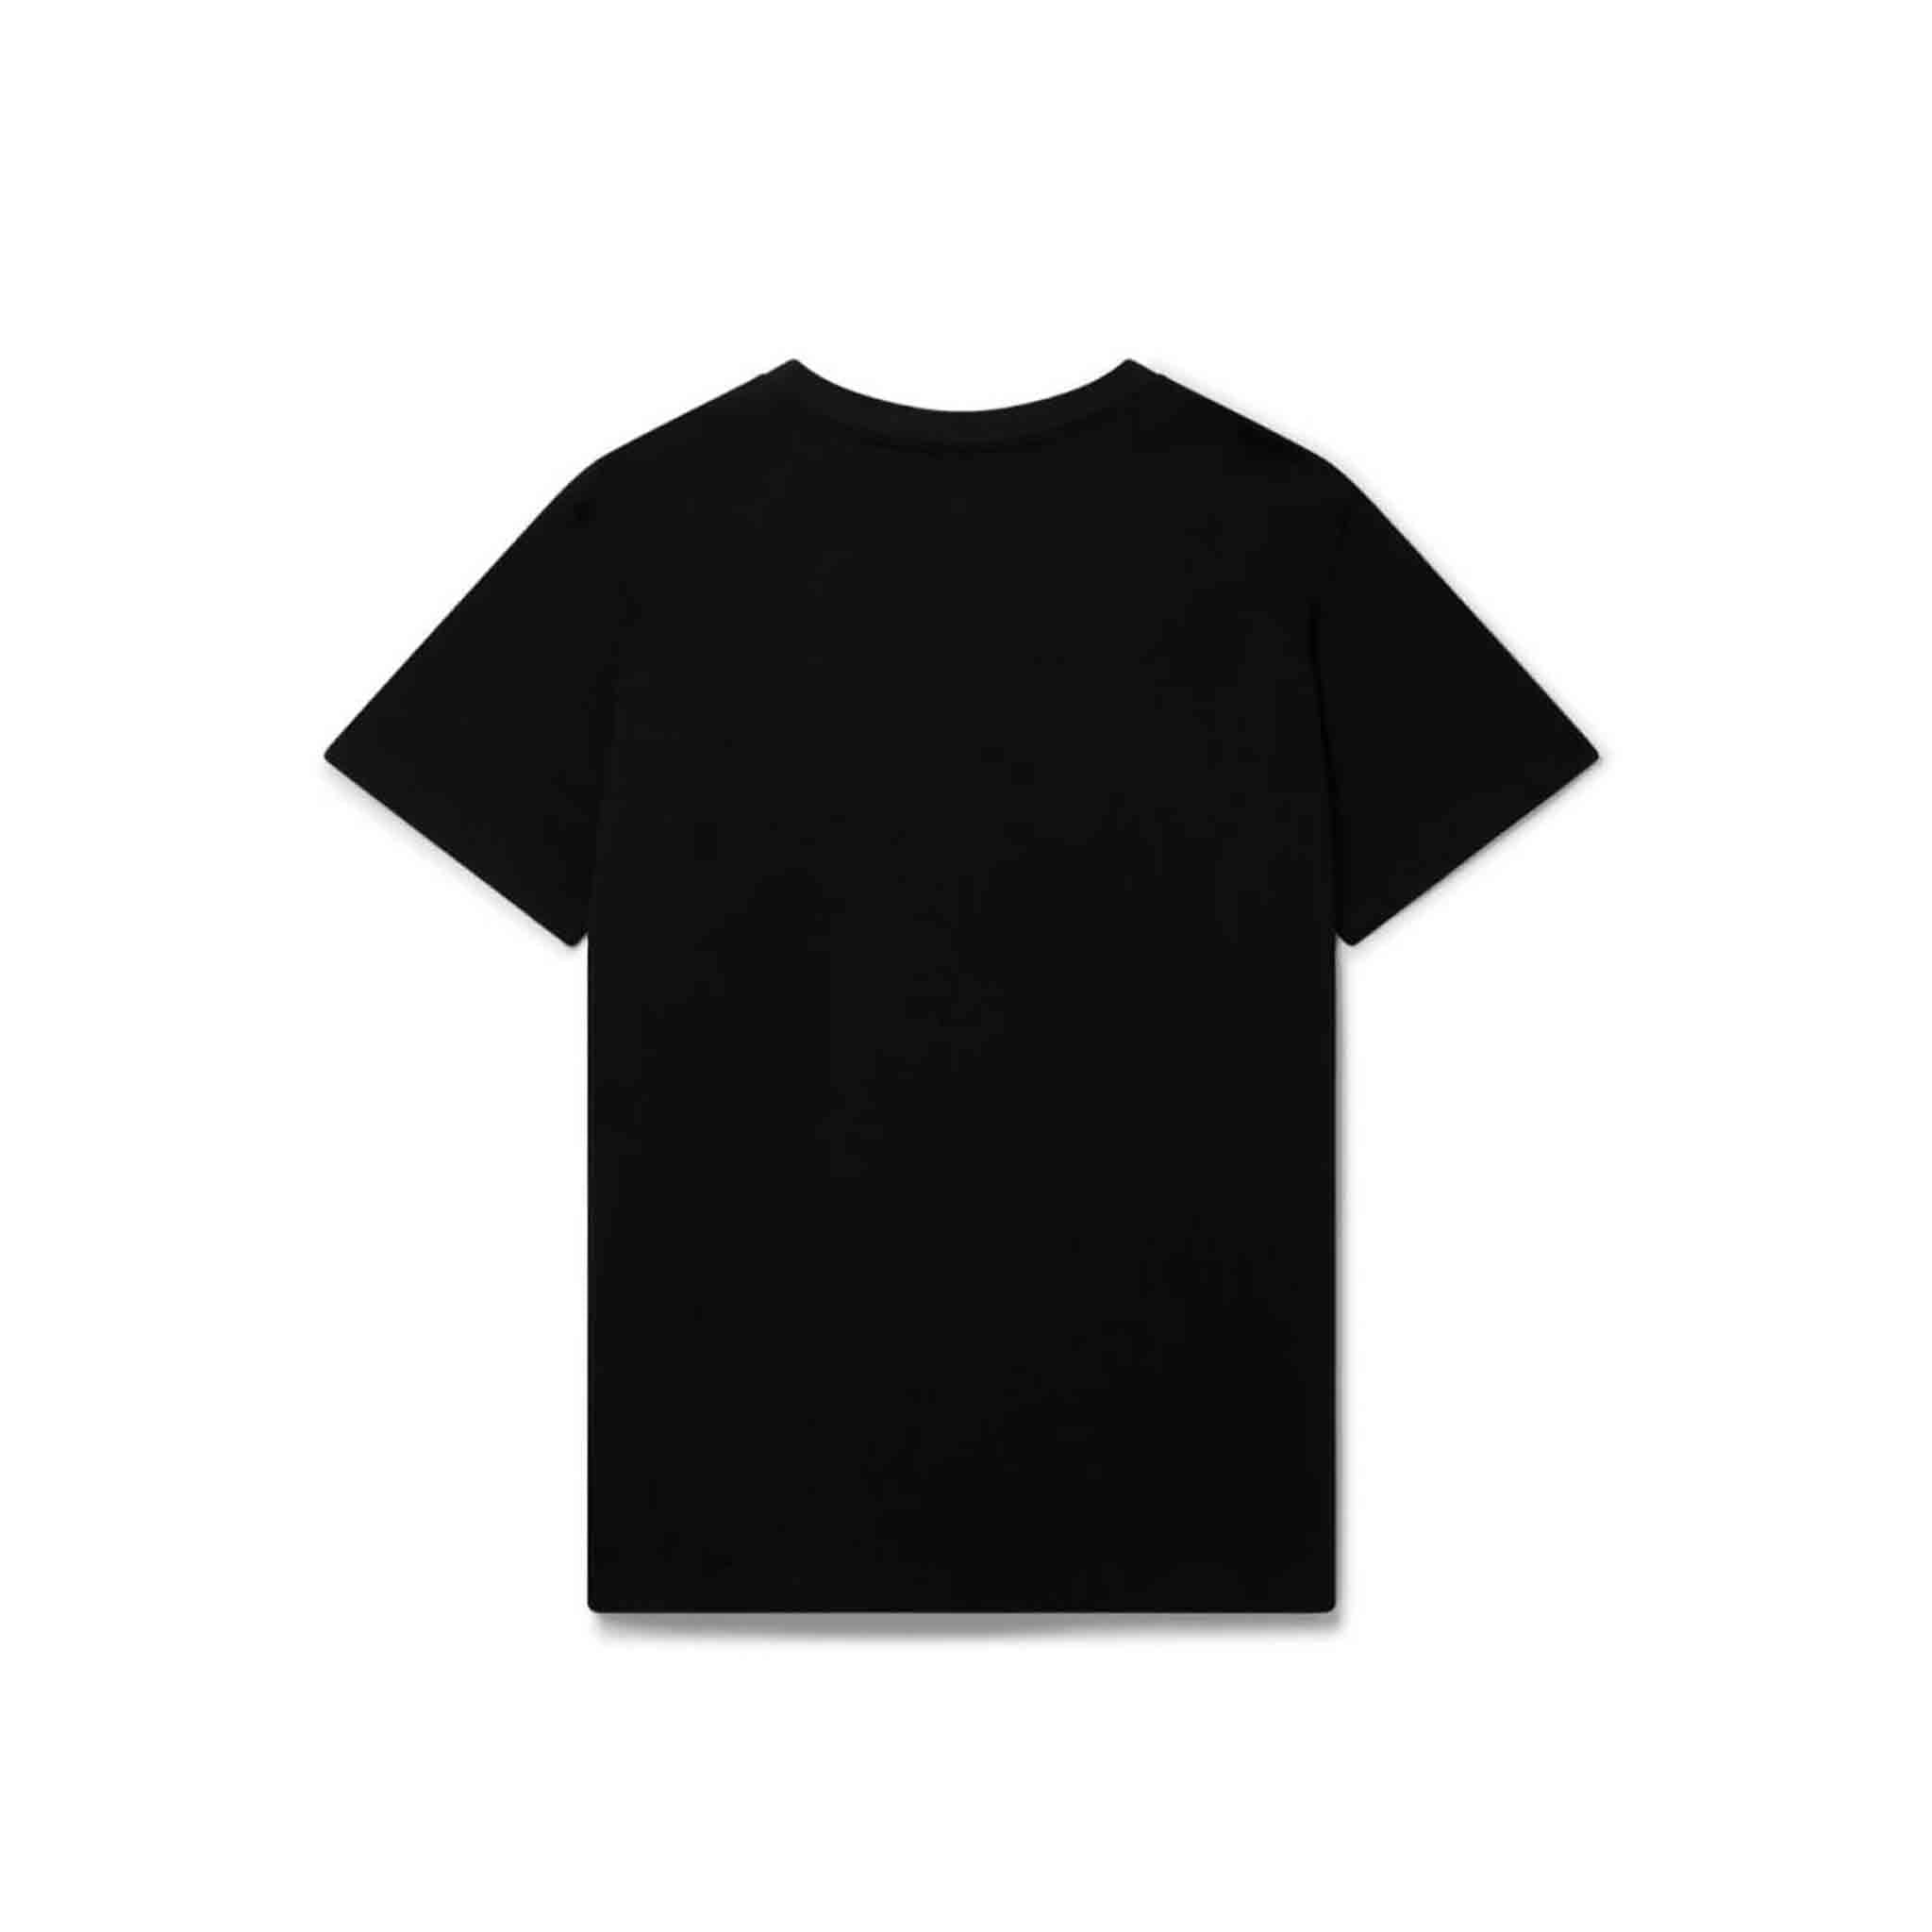 Casa Blanca Talisman T-Shirt in Black